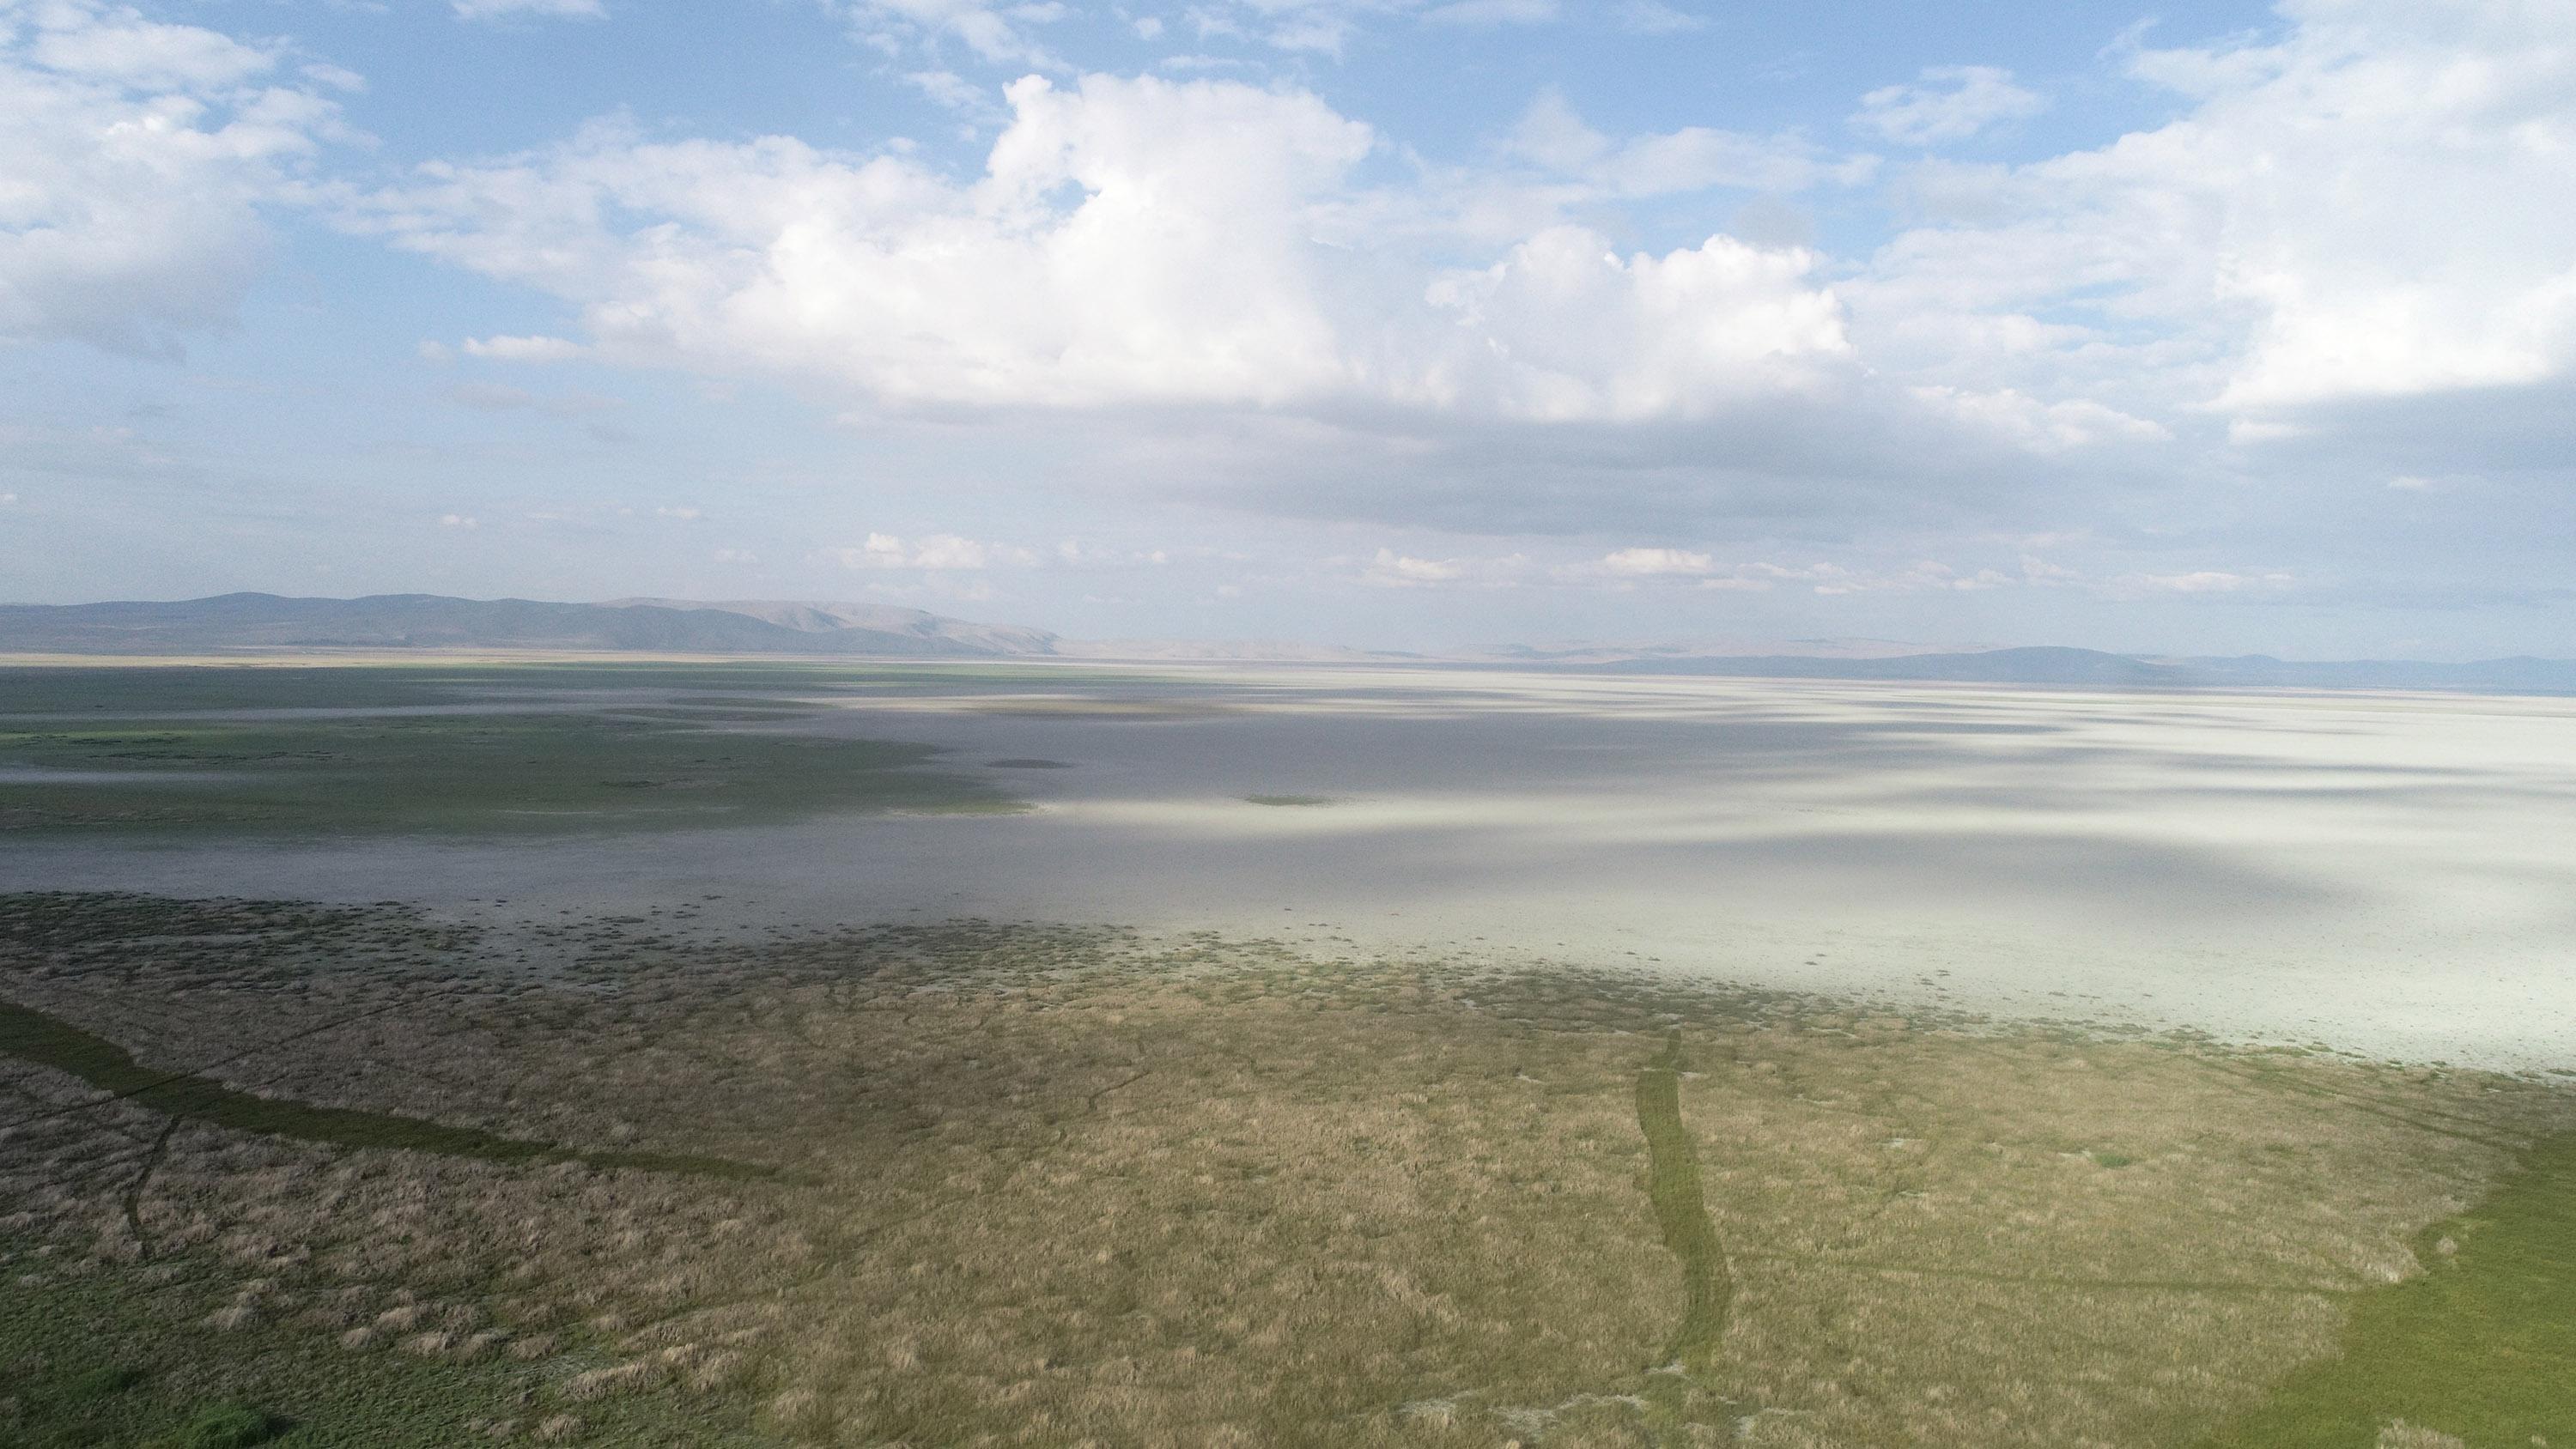 Son dakika: Akşehir Gölünda içler acısı görüntü Türkiyedeki en büyük beşinci göldü...